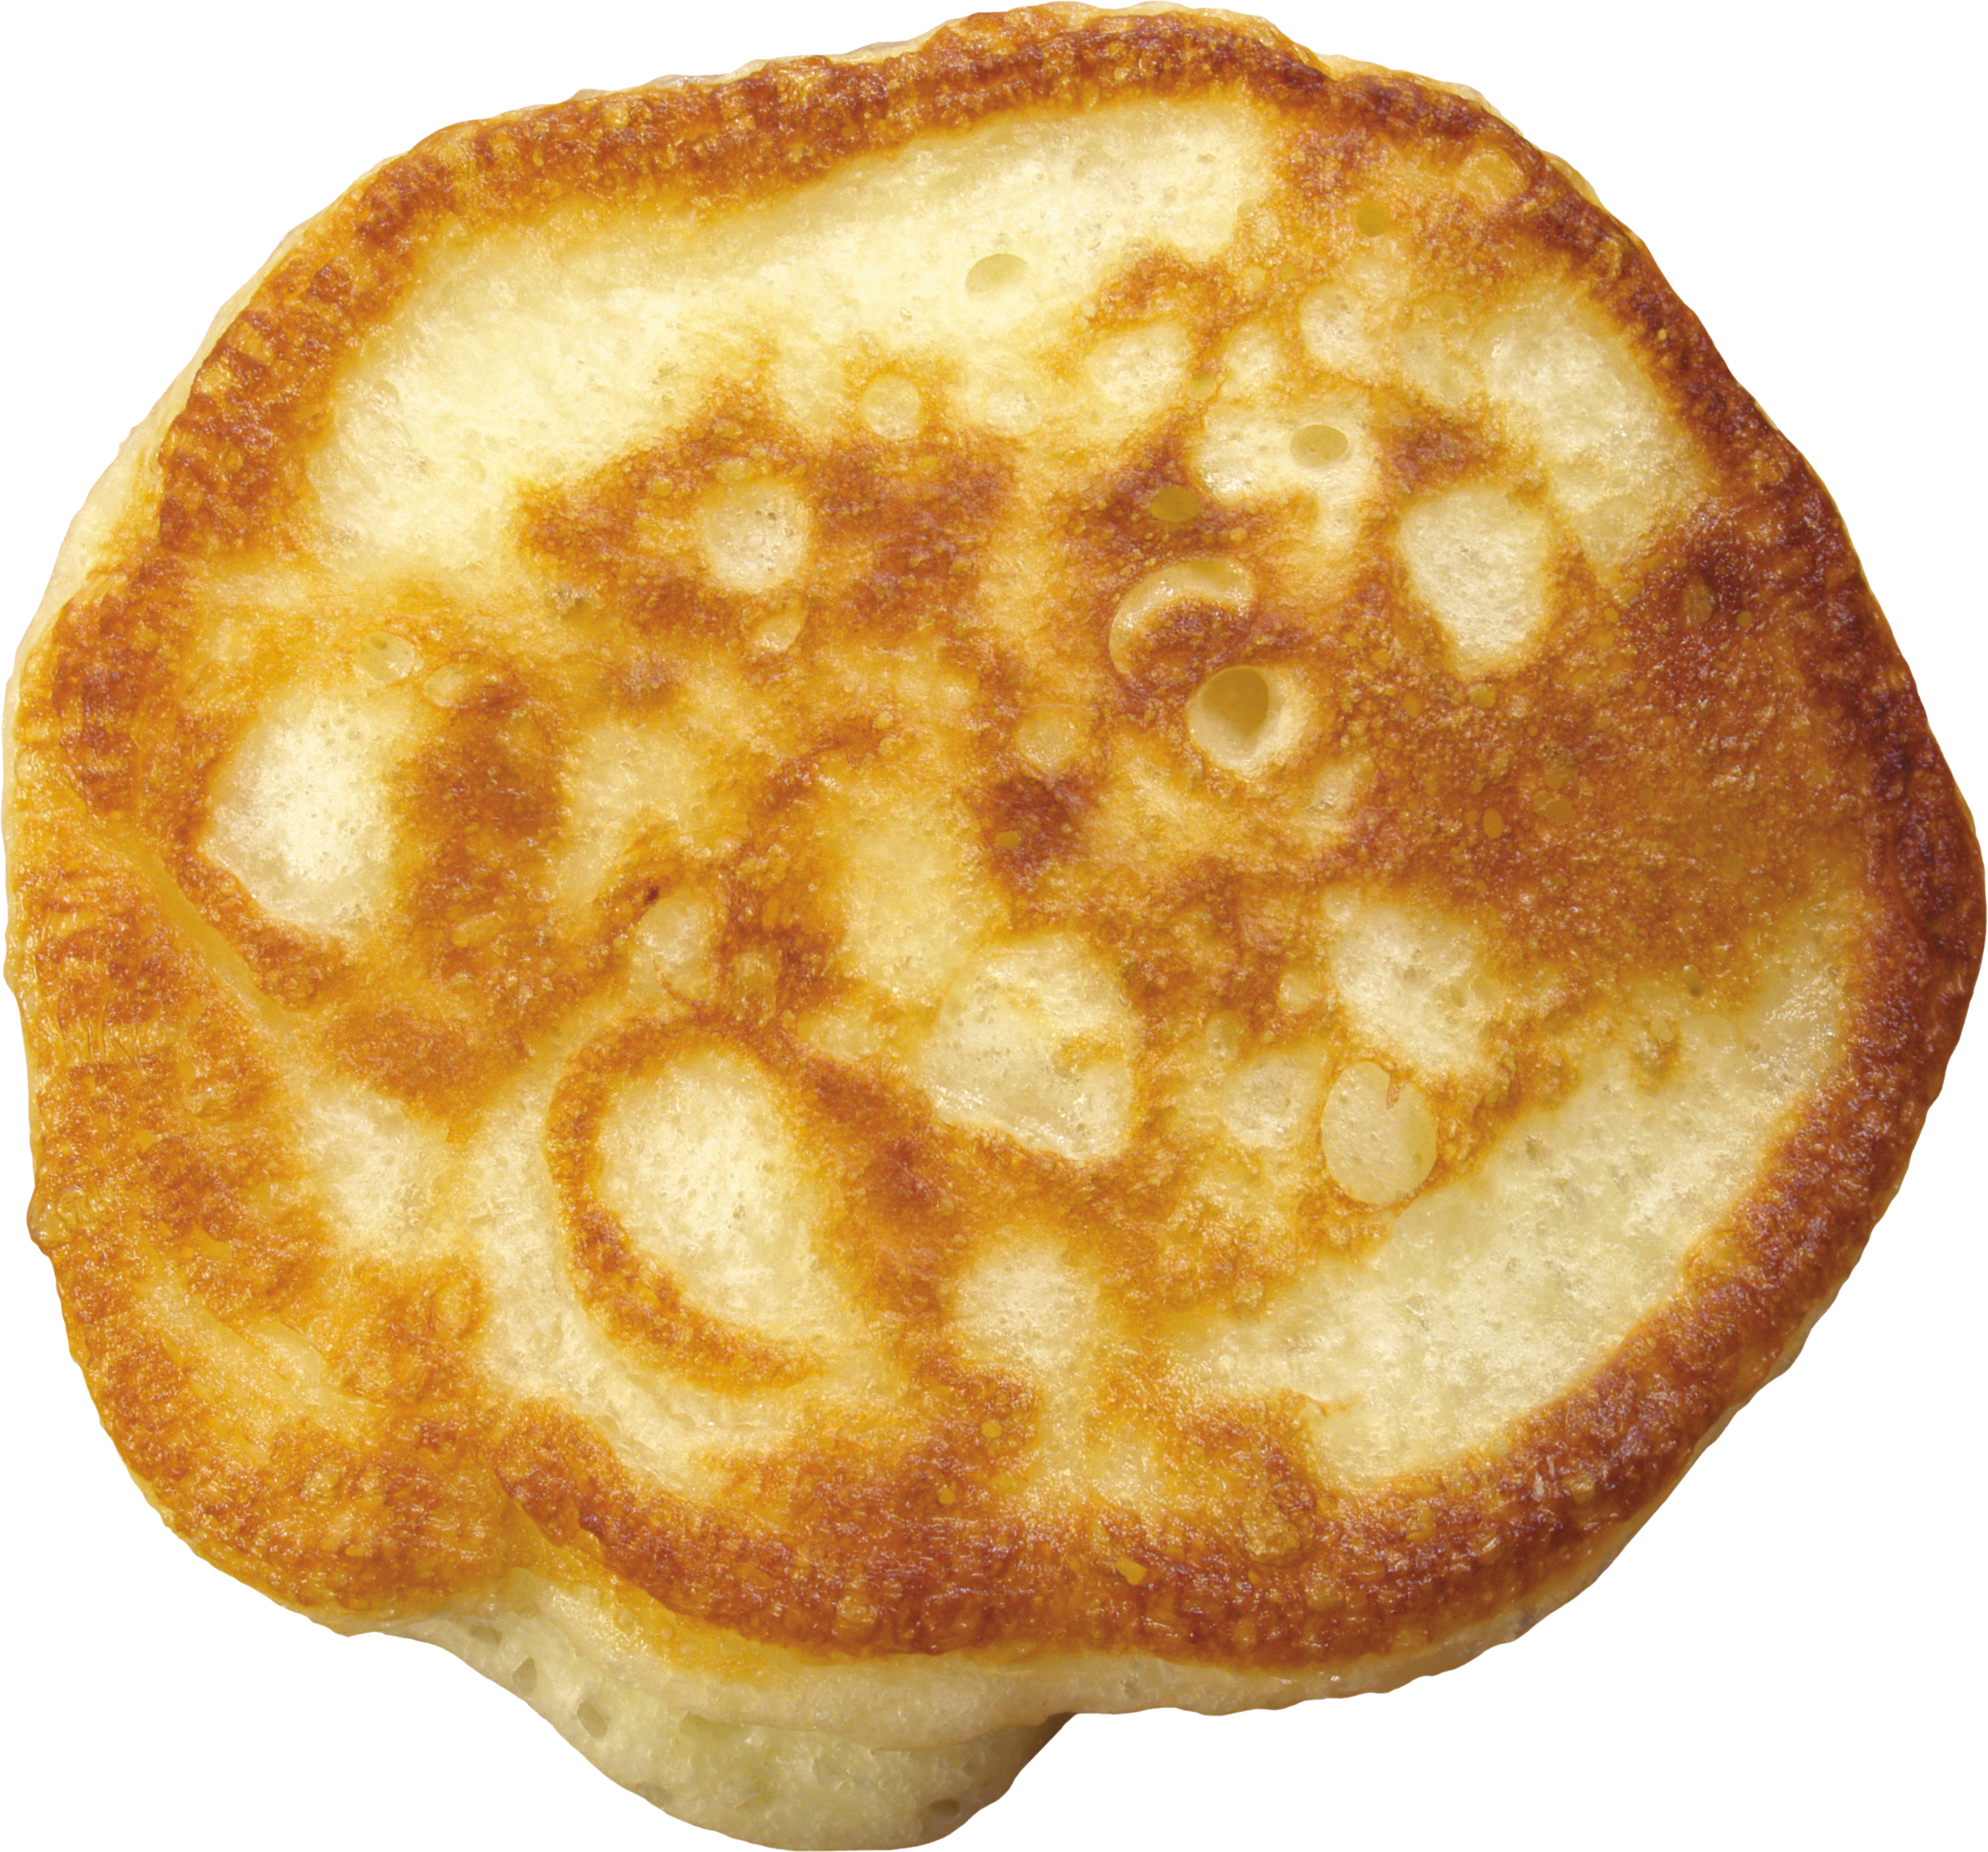 Pancake